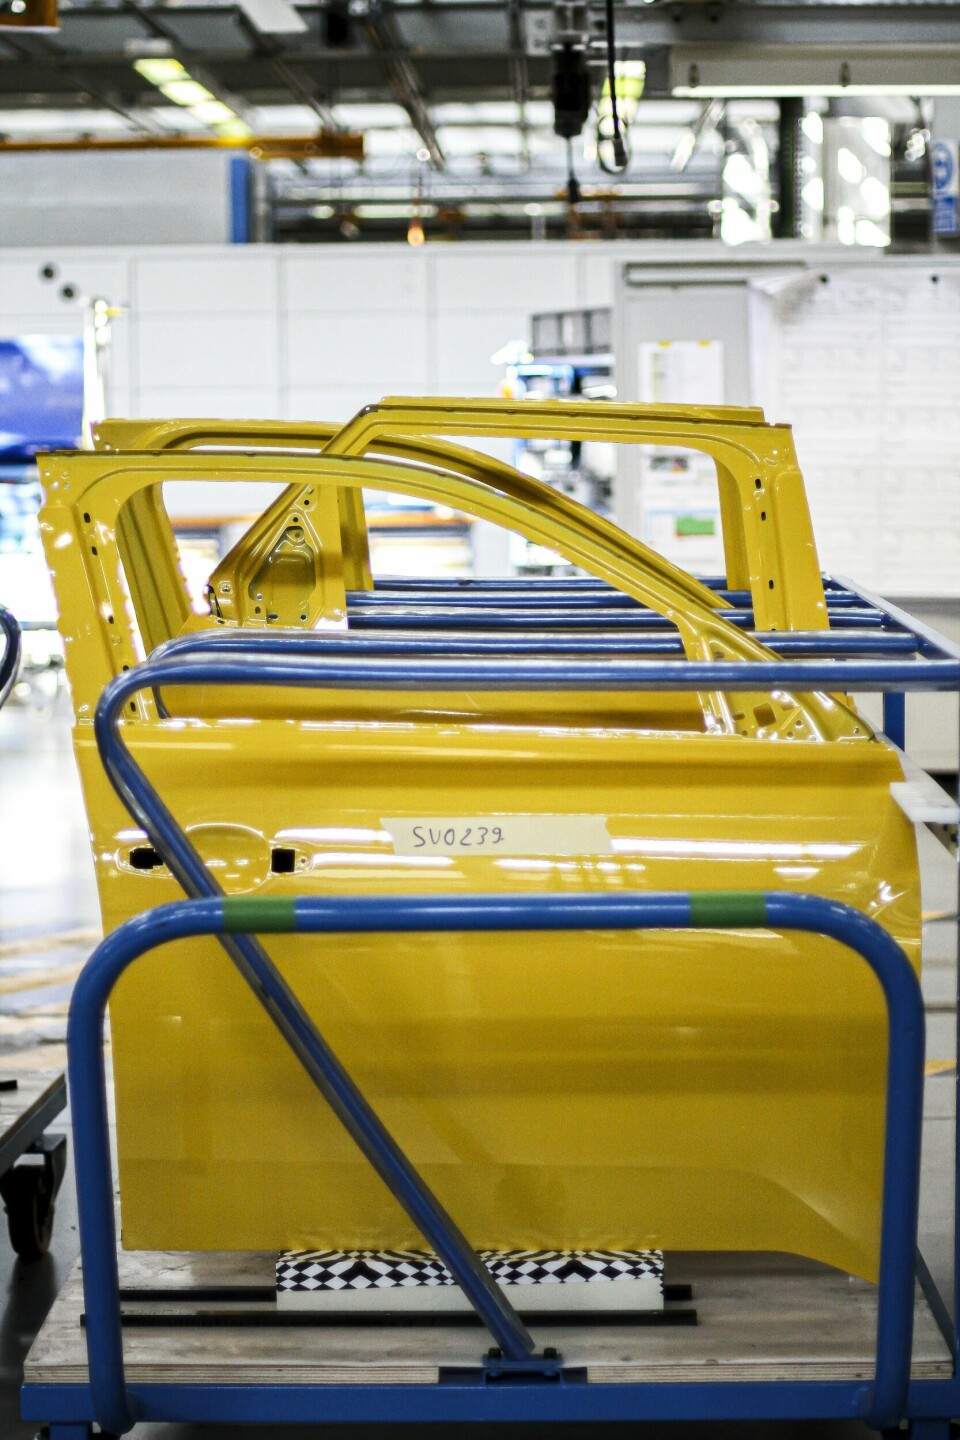 Renault 5 EV prototyping